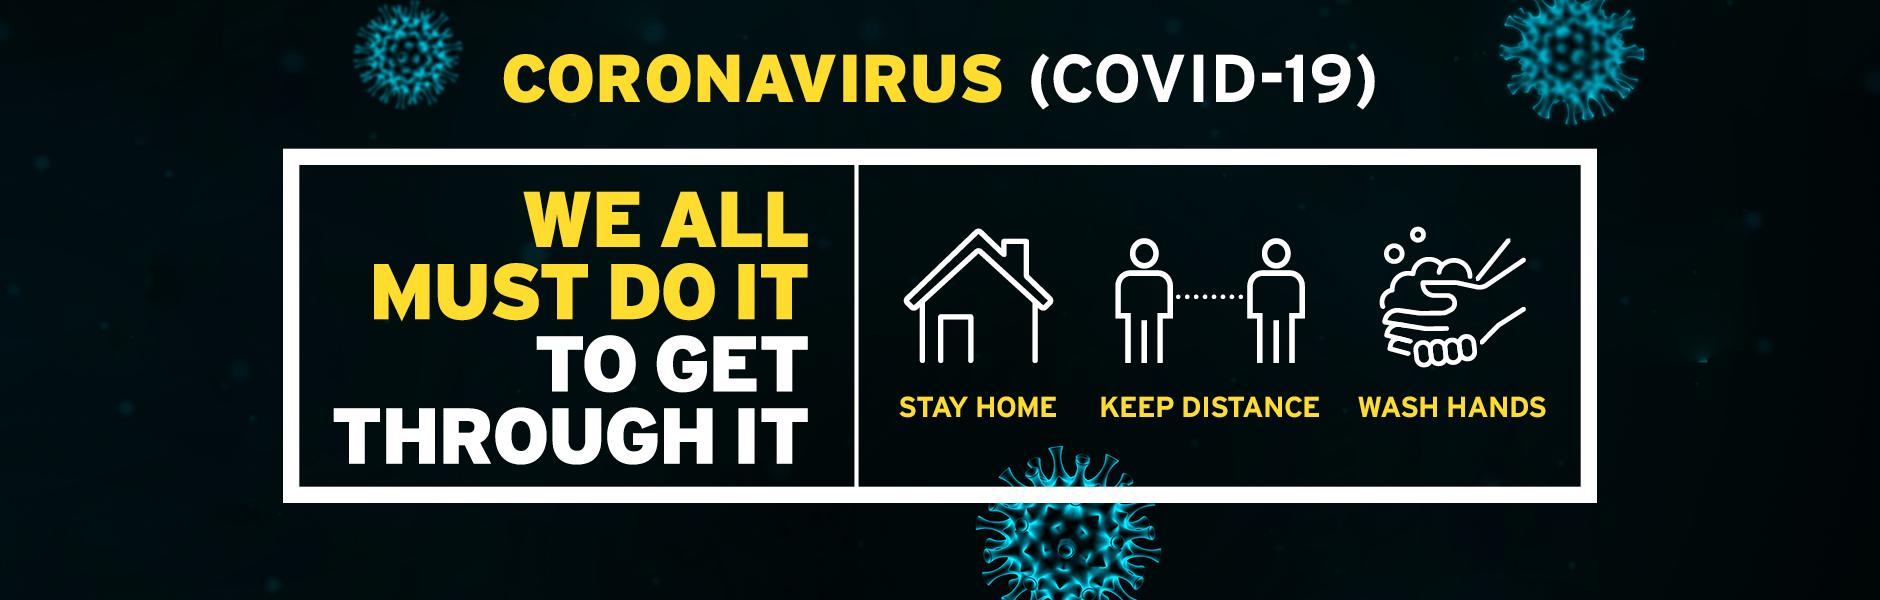 coronavirus genesis 1880x600